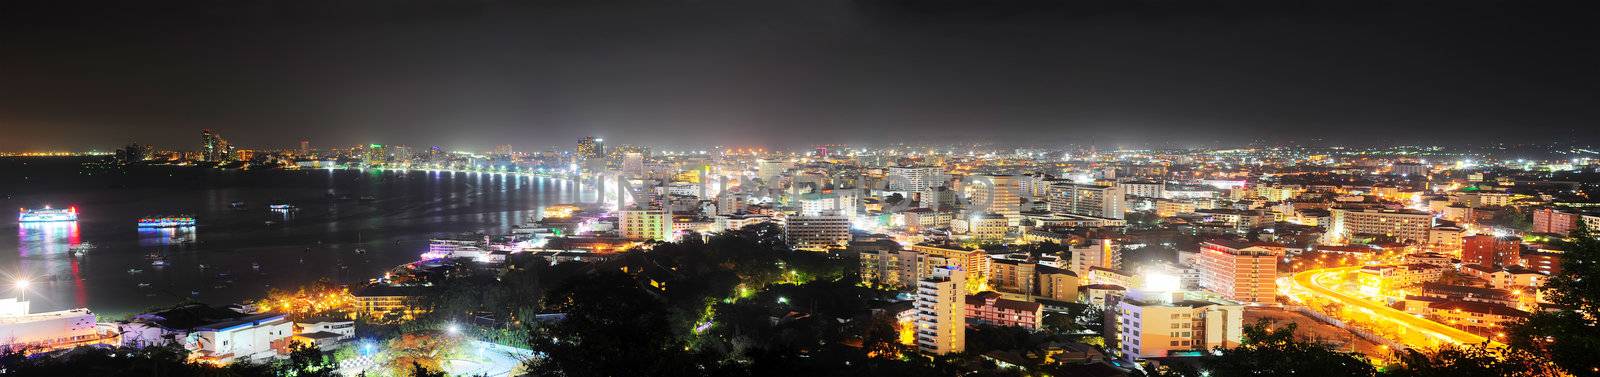 Pattaya at night by joyfull